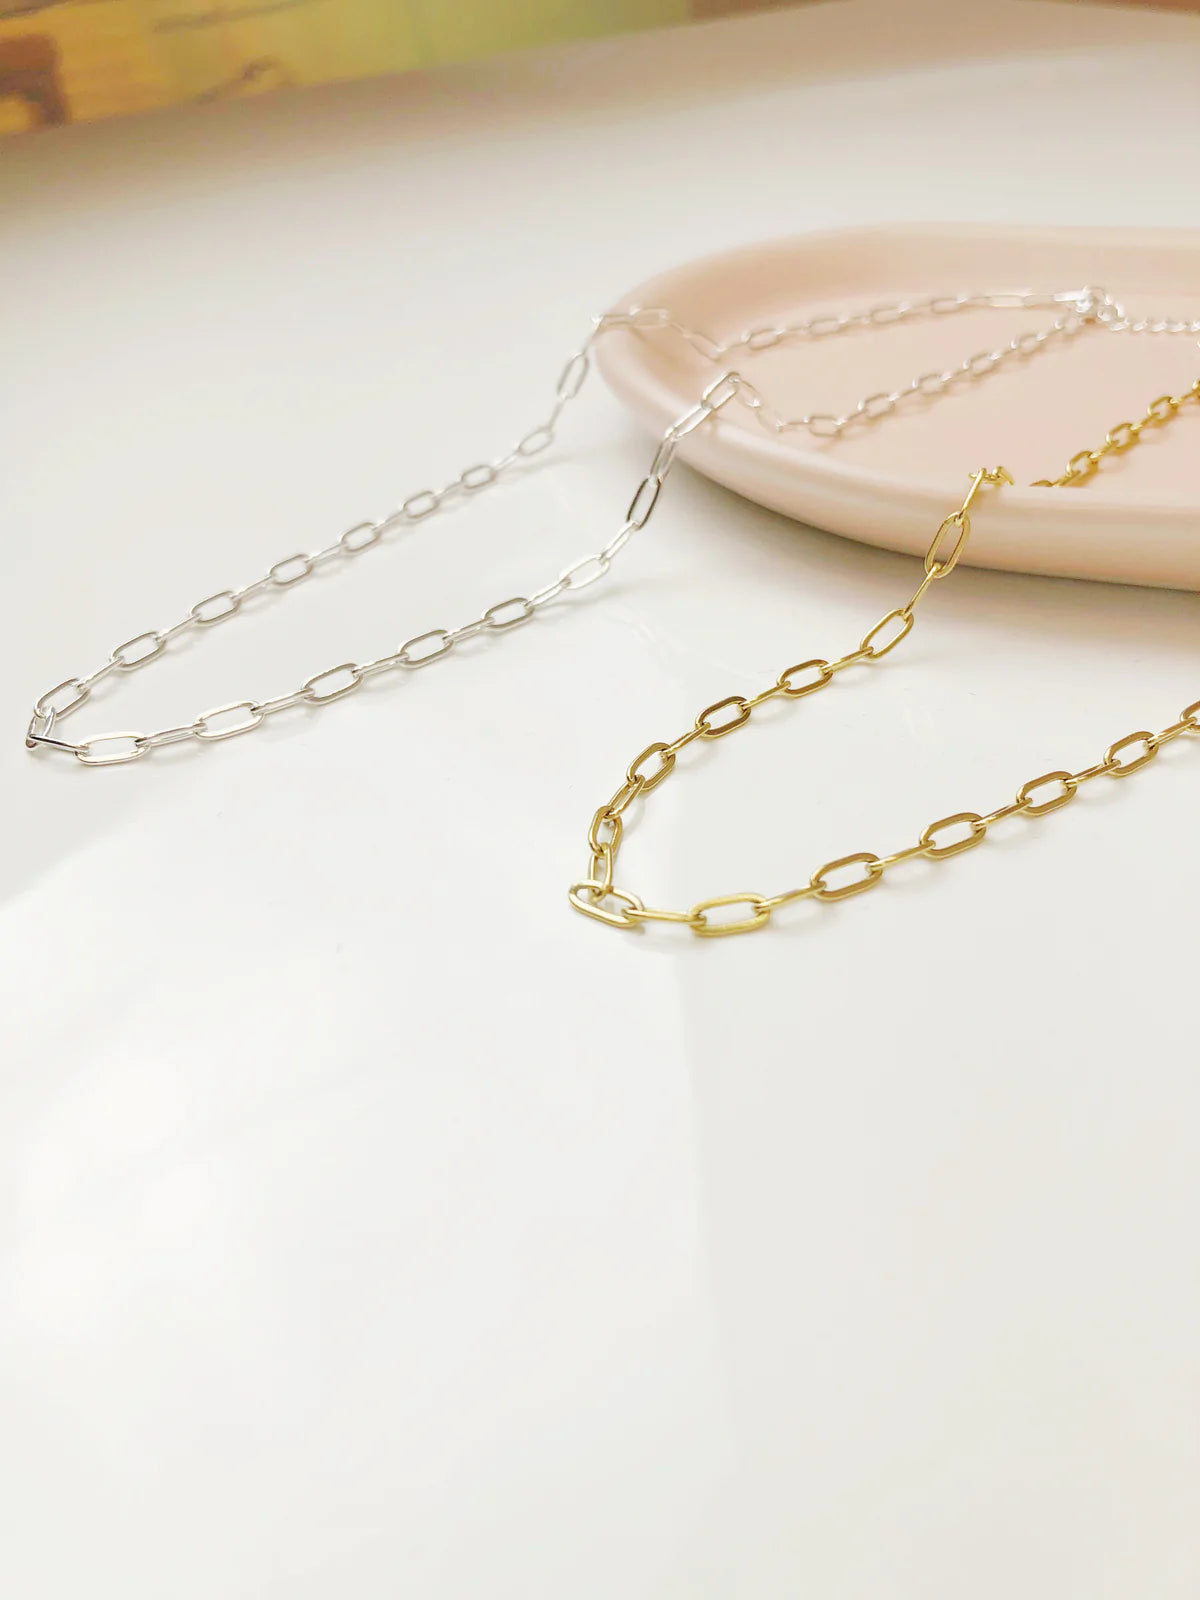 Park + buzz paperclip necklace